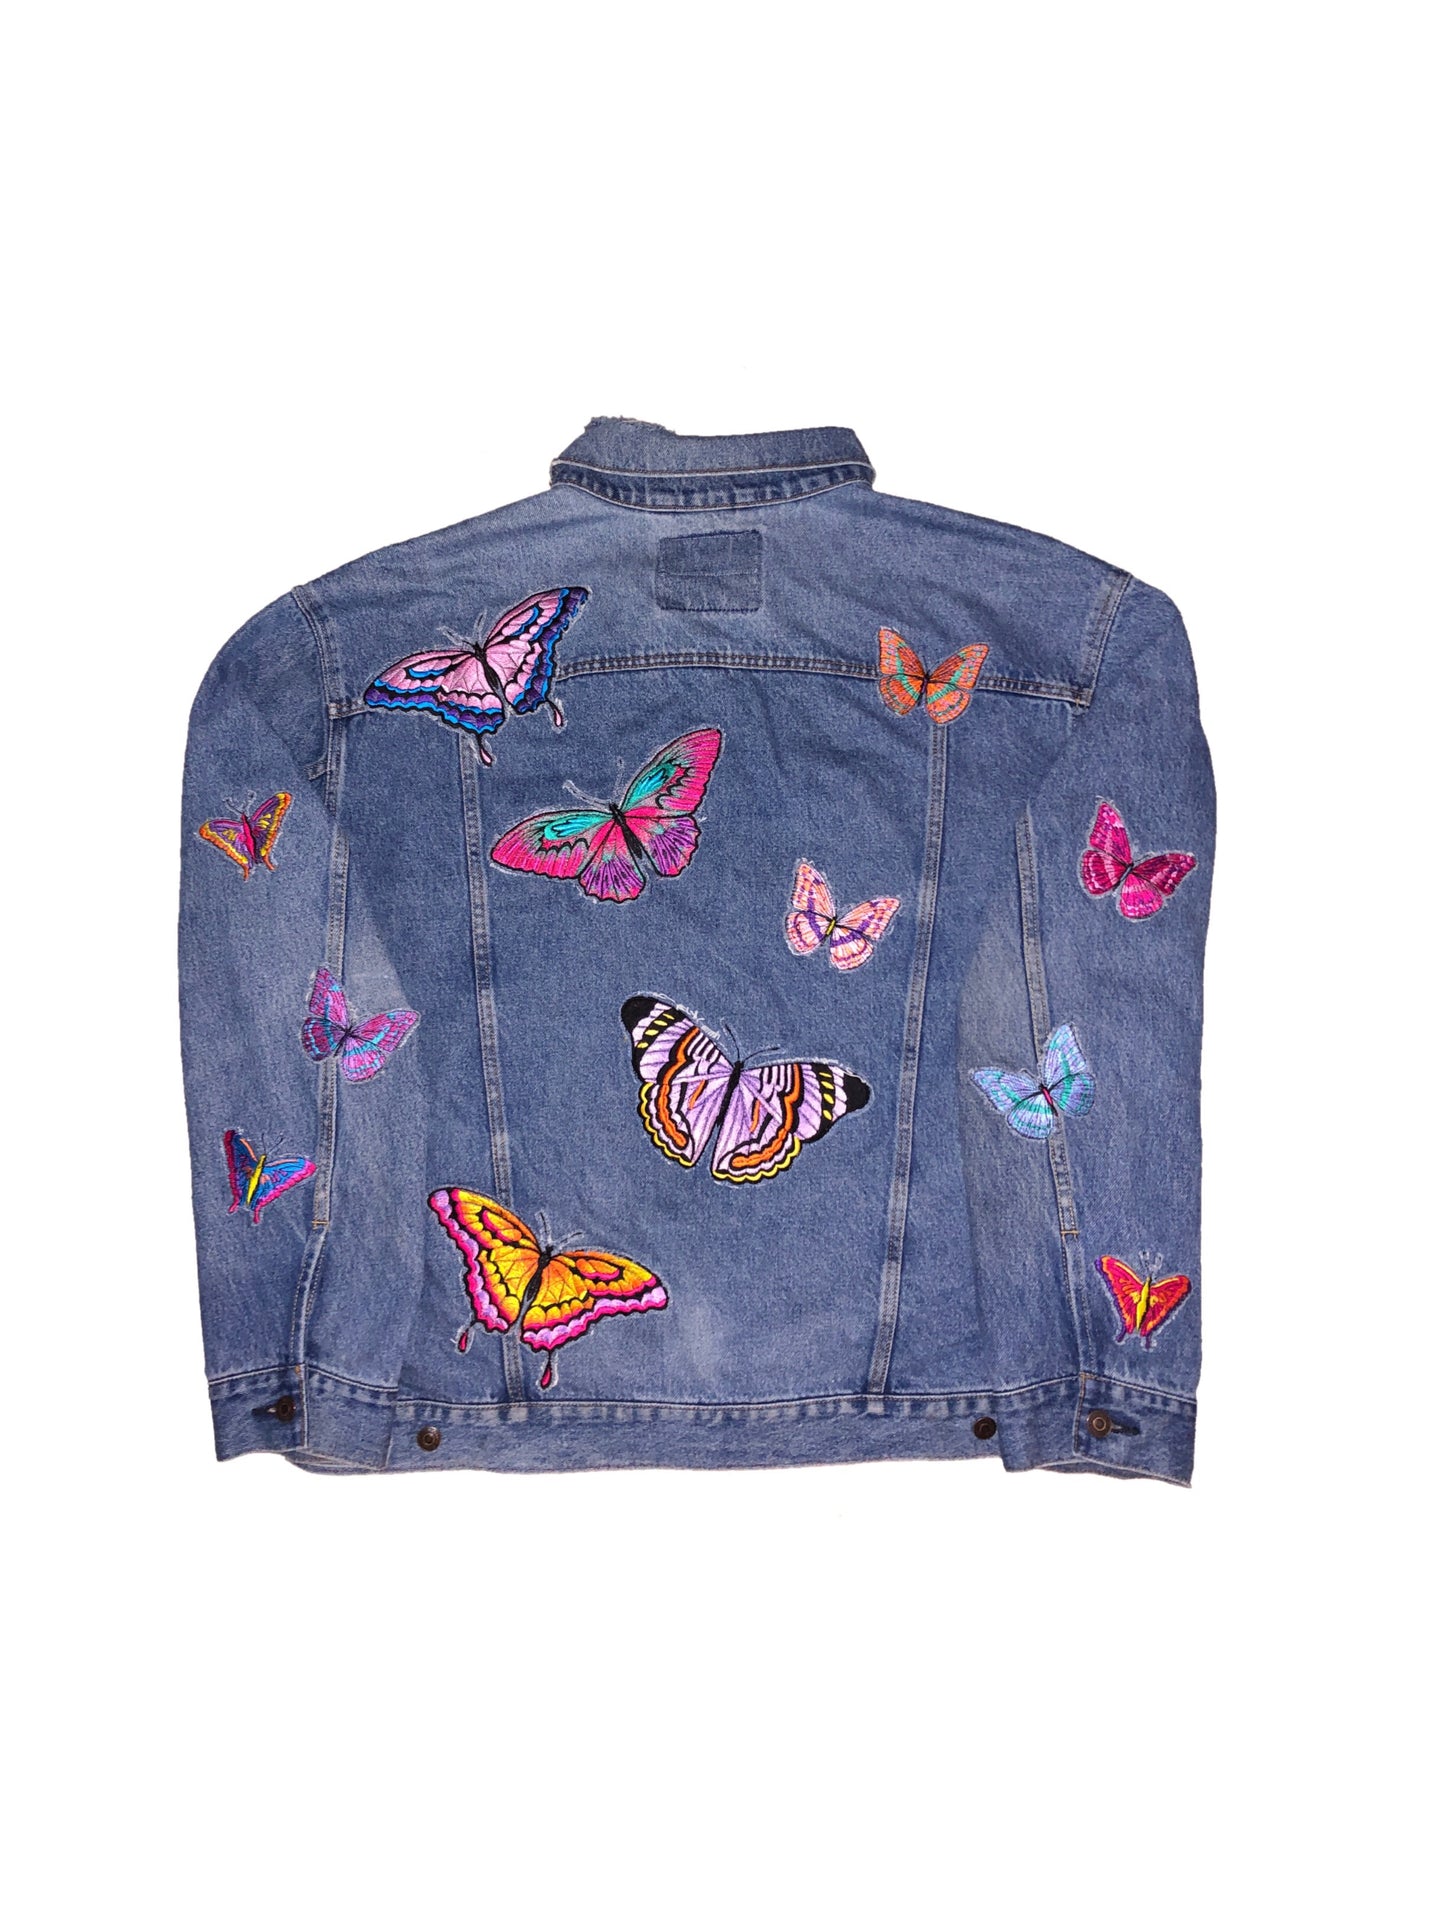 Butterfly effect denim jacket